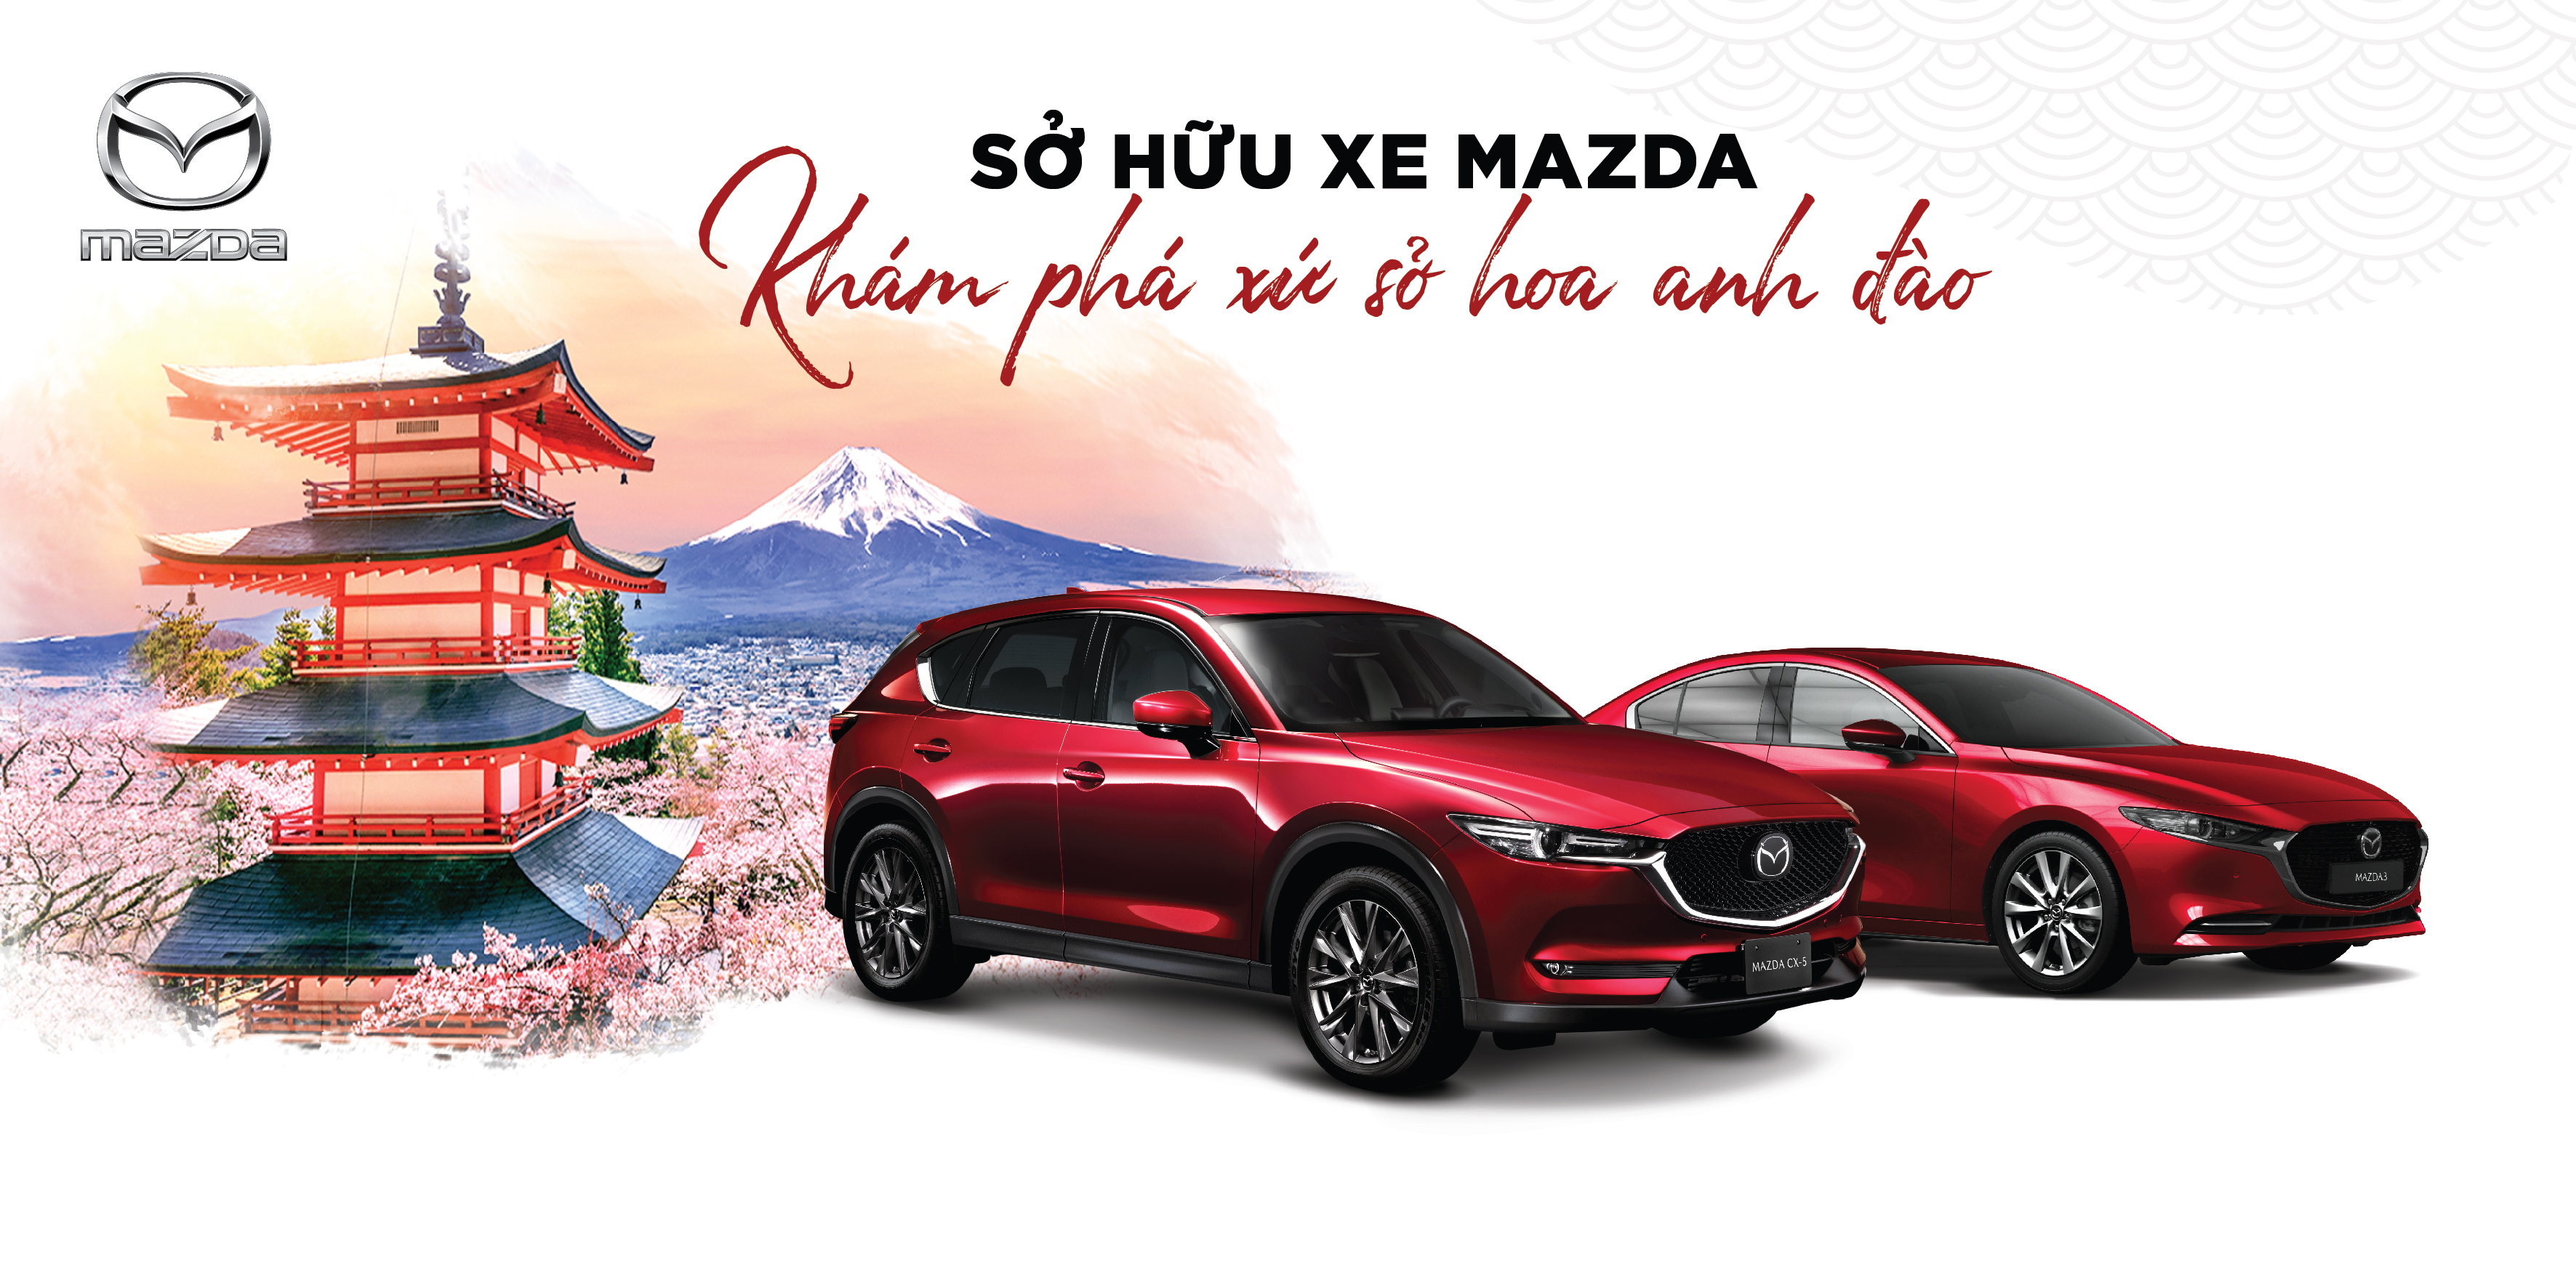 Mazda - Thương hiệu xe hơi Mazda không chỉ nổi tiếng về độ tiện nghi và sự bền bỉ, mà còn đem lại cho khách hàng cảm giác lái vô cùng thoải mái. Dòng xe mới nhất của Mazda được trang bị nhiều tính năng hiện đại, đem đến sự yên tâm về an toàn cho người lái và hành khách.